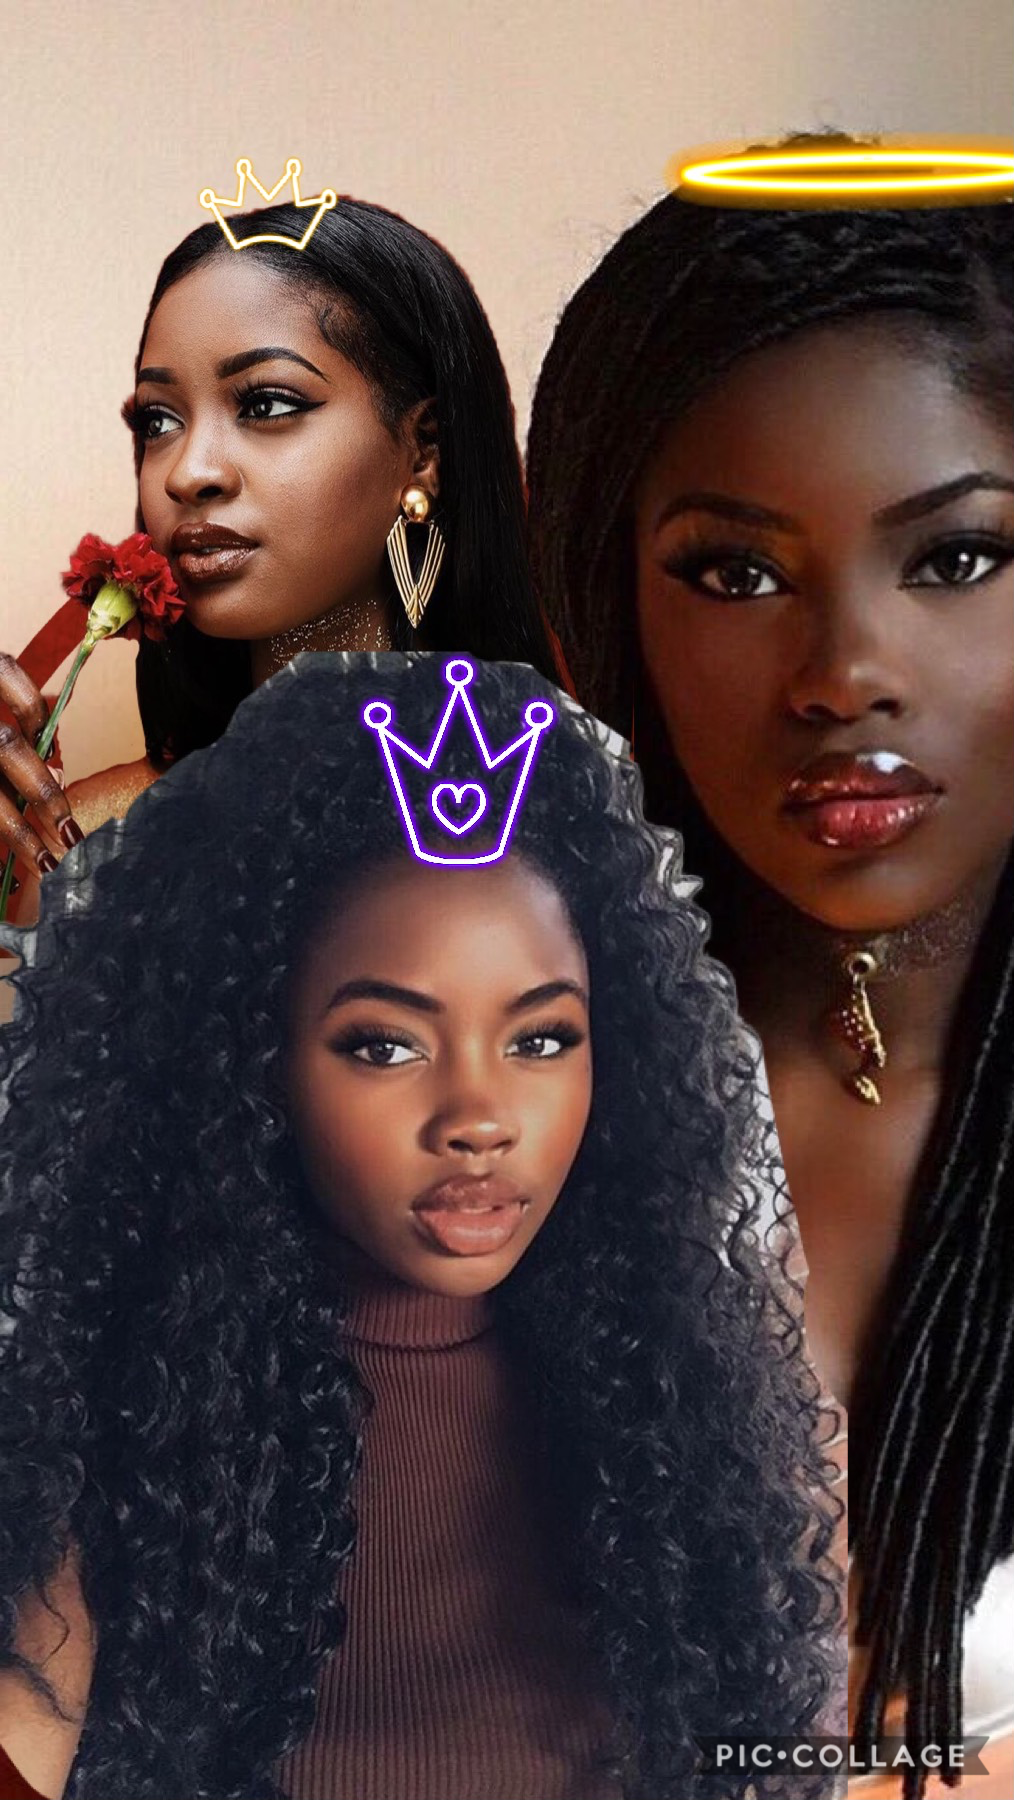 Black girl POWER! #queen! 😂😂😉 x❤️